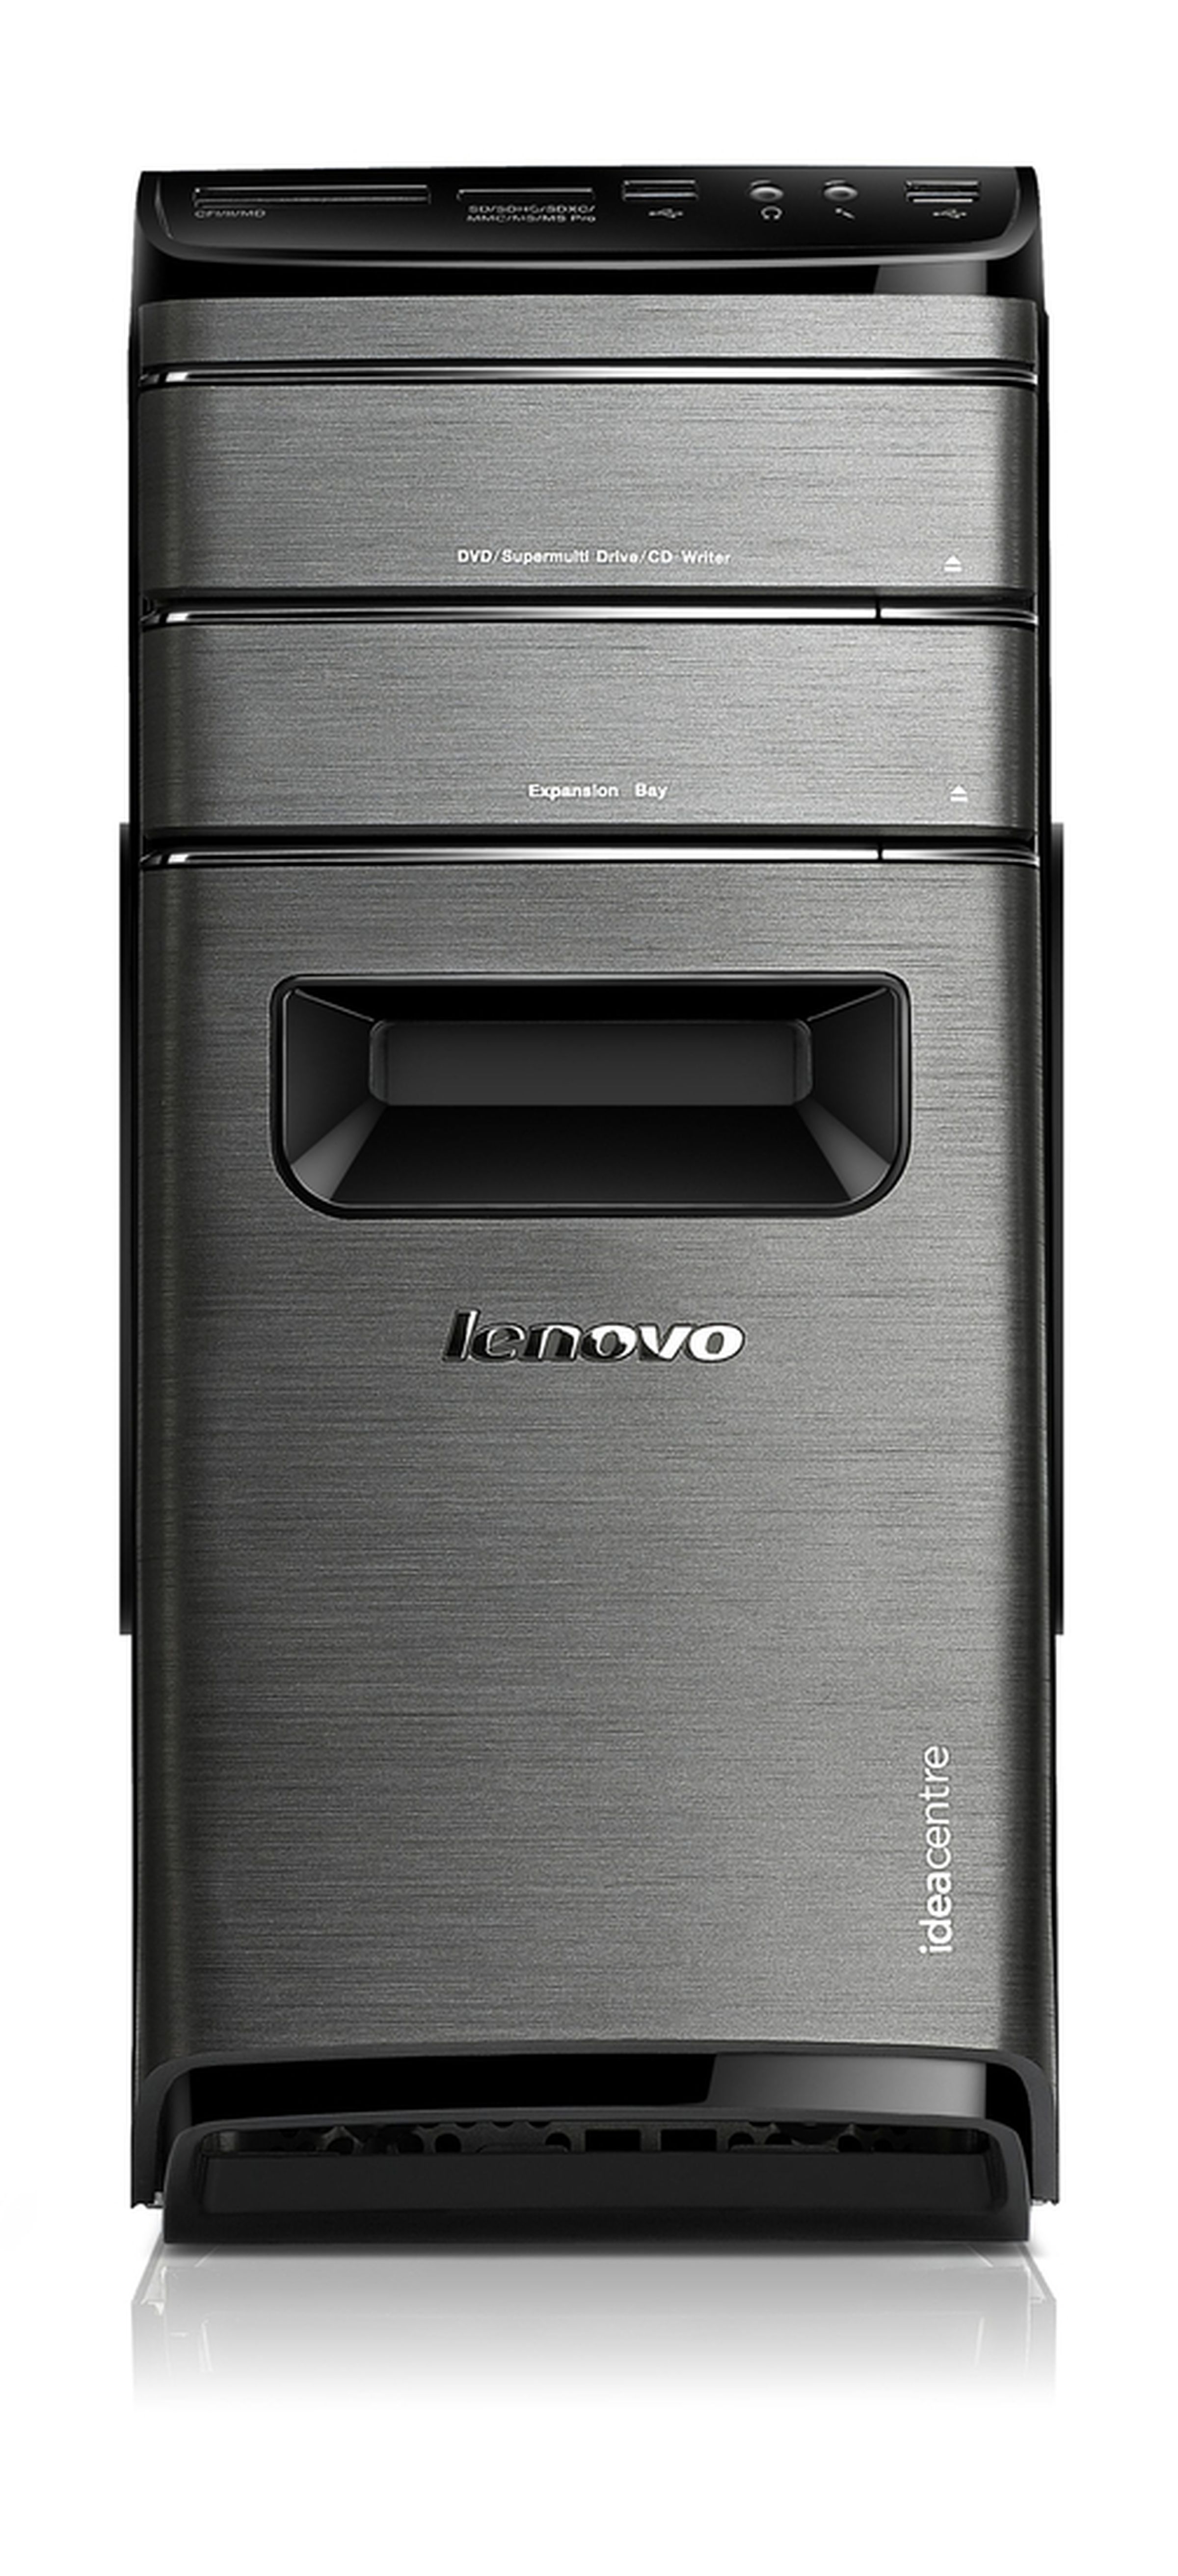 Lenovo IdeaCentre K430 desktop pictures